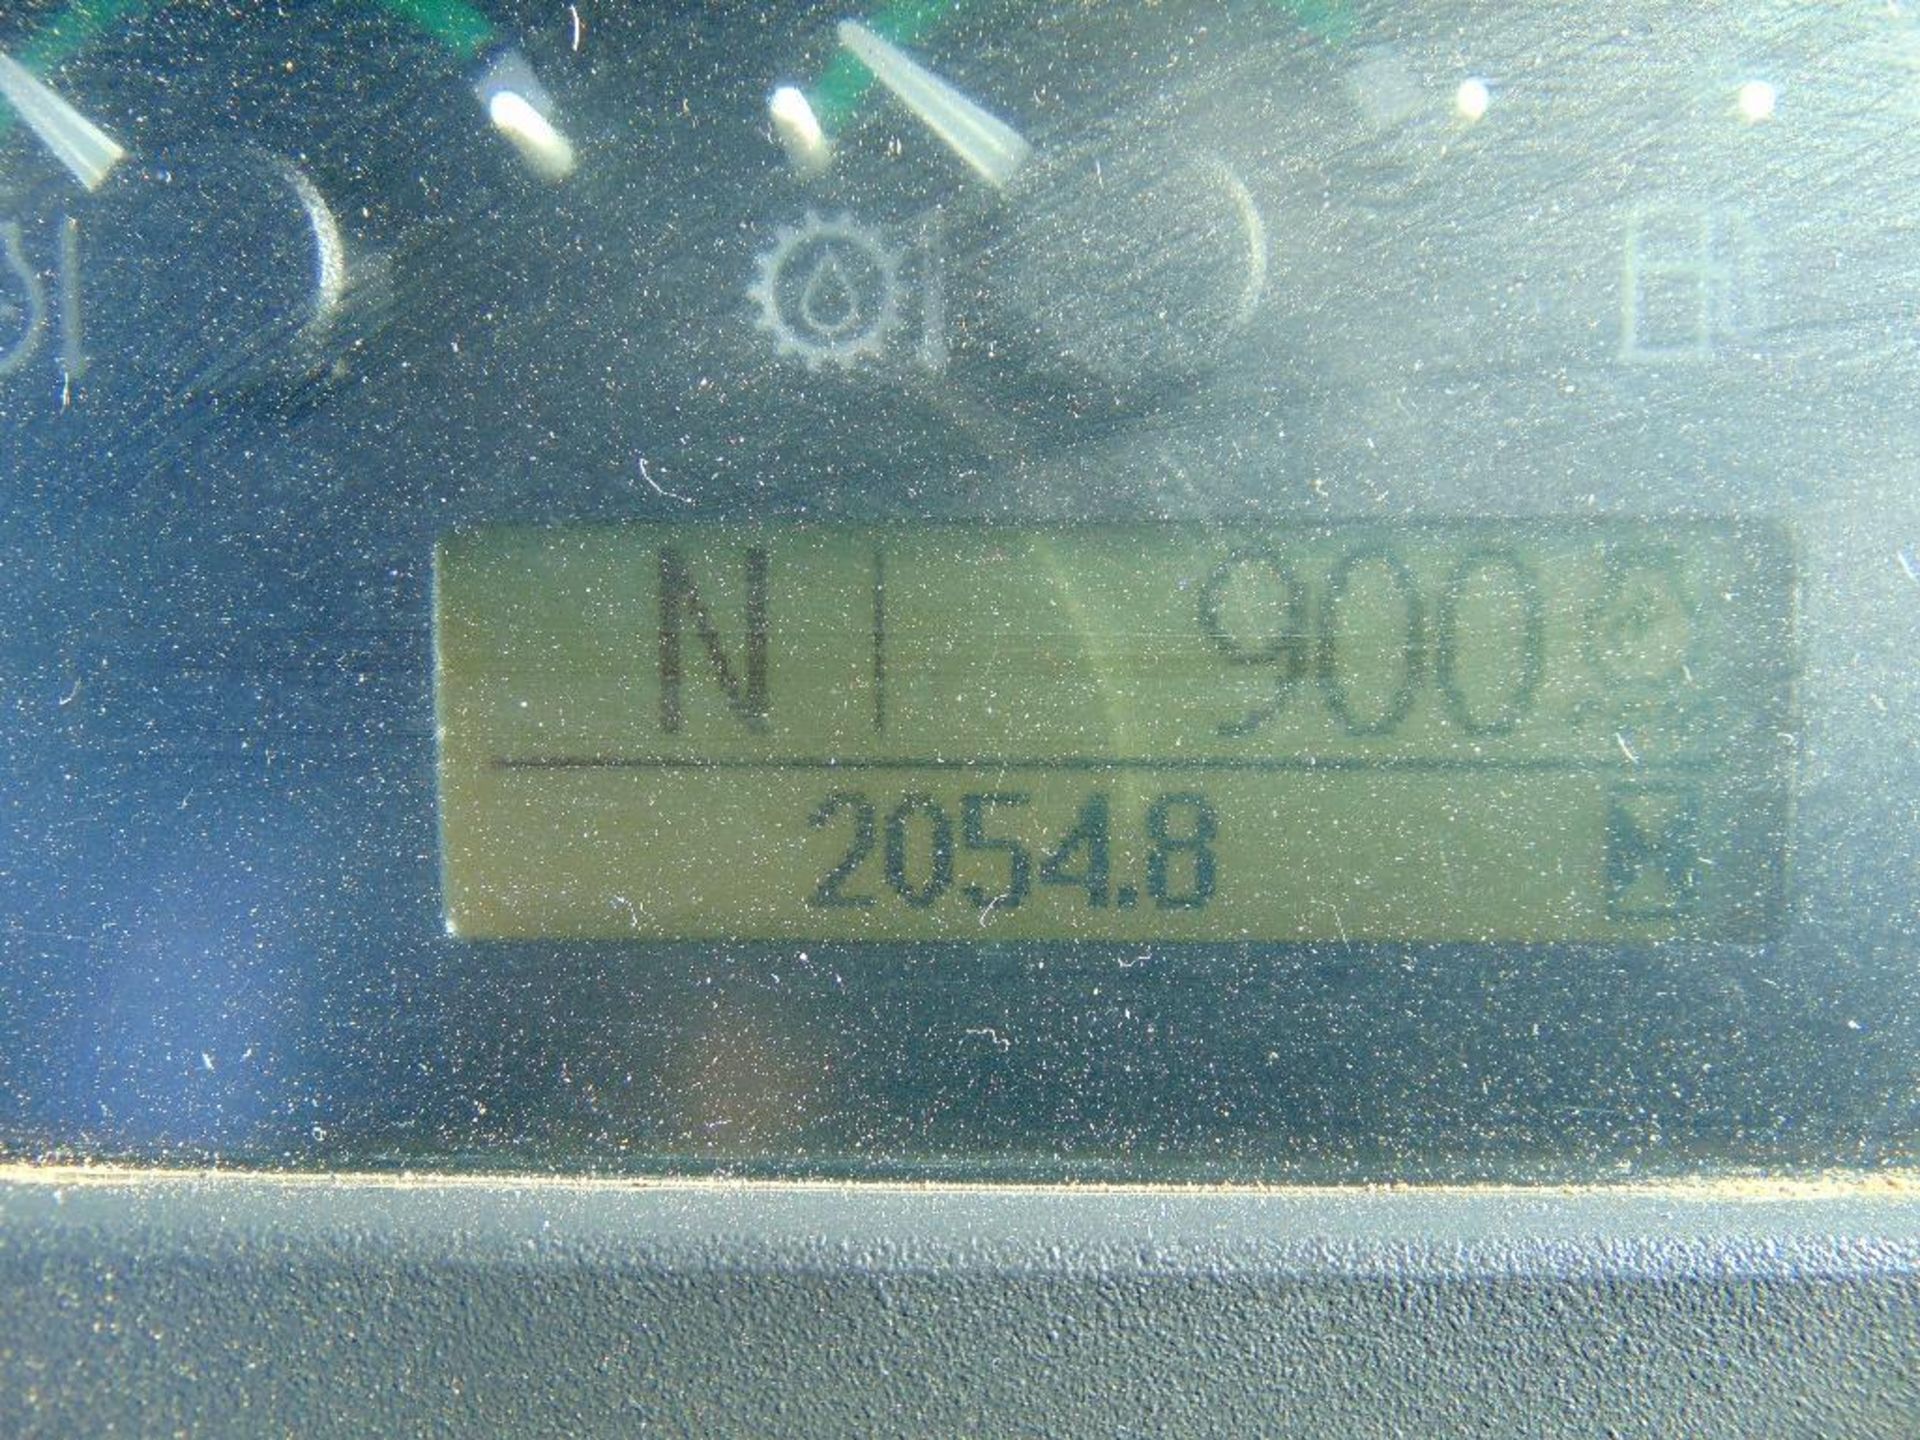 2012 John Deere 310J 4x4 Loader Backhoe, s/n 210388, gp bkt, cab, a/c, hour meter reads 2055 hrs, - Image 9 of 10